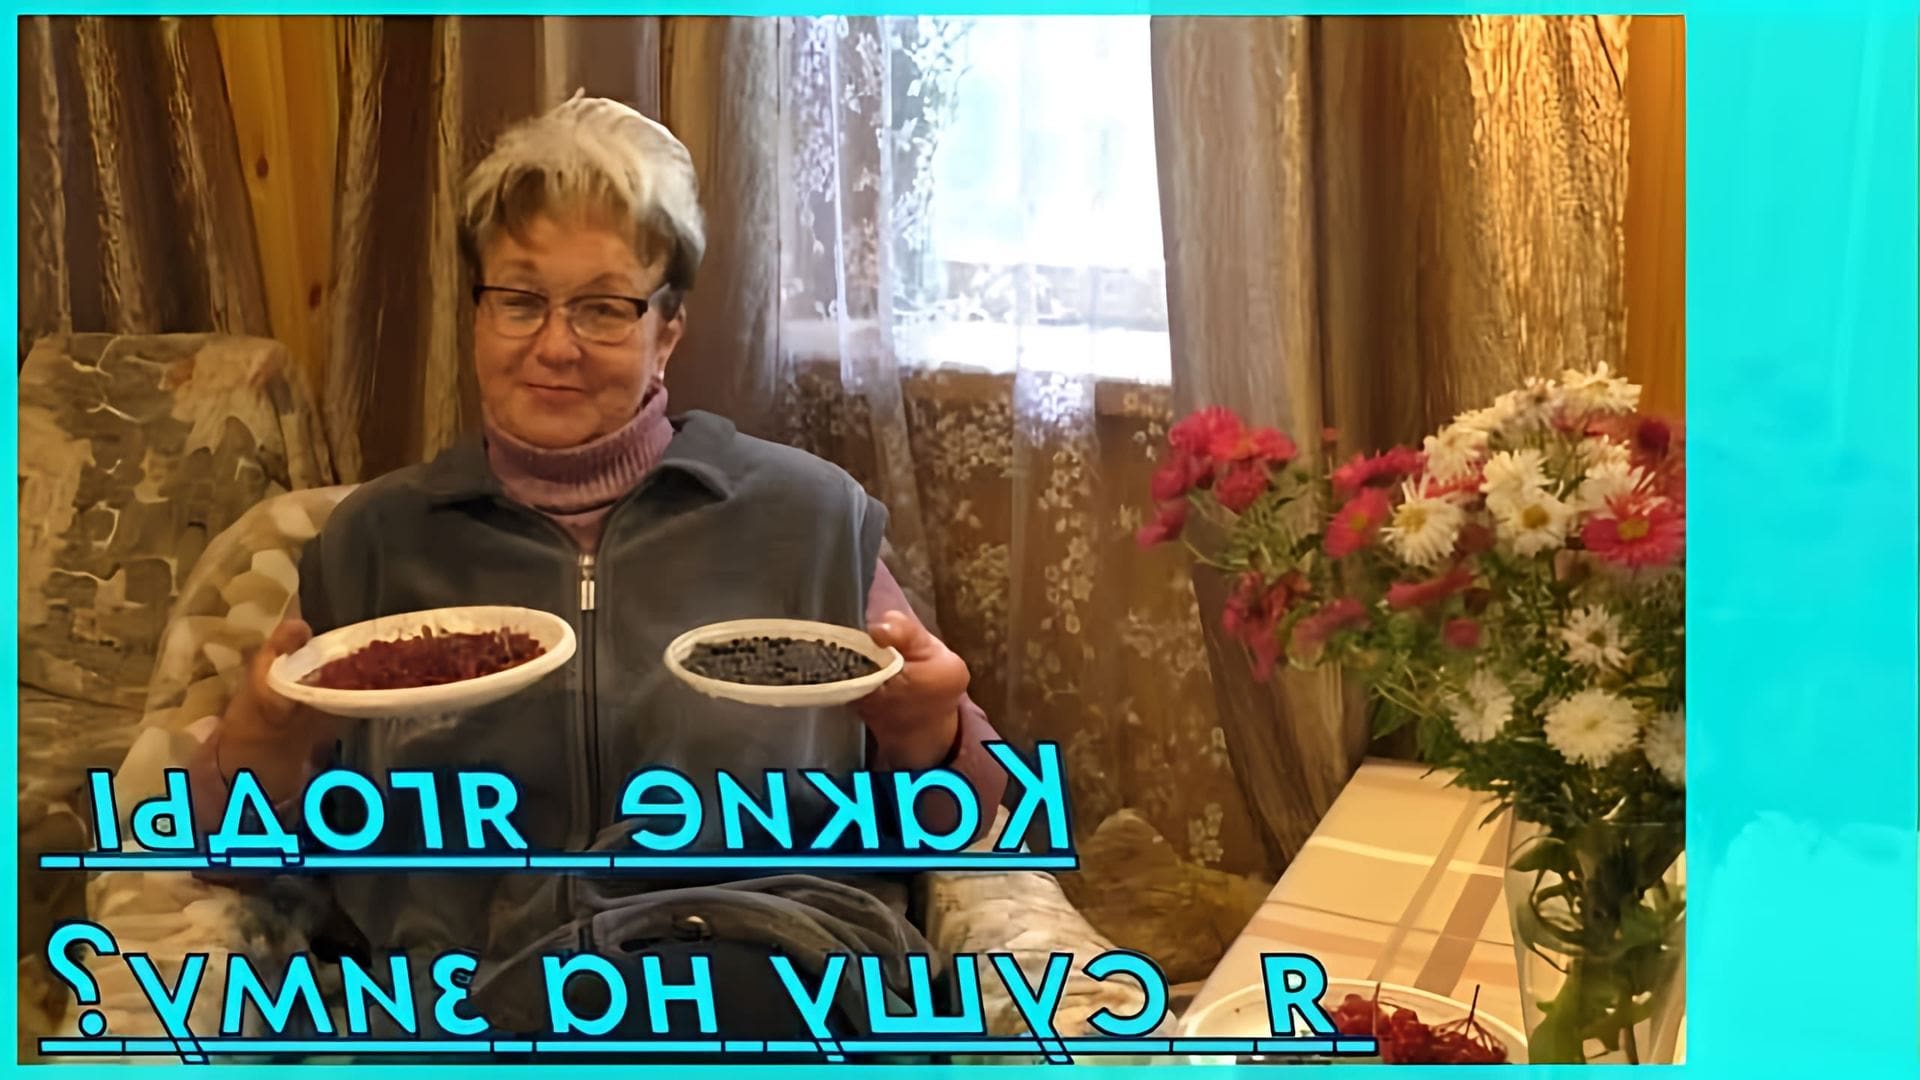 В этом видео рассказывается о трех ягодах, которые можно заготавливать на зиму: калина, барбарис и можжевельник